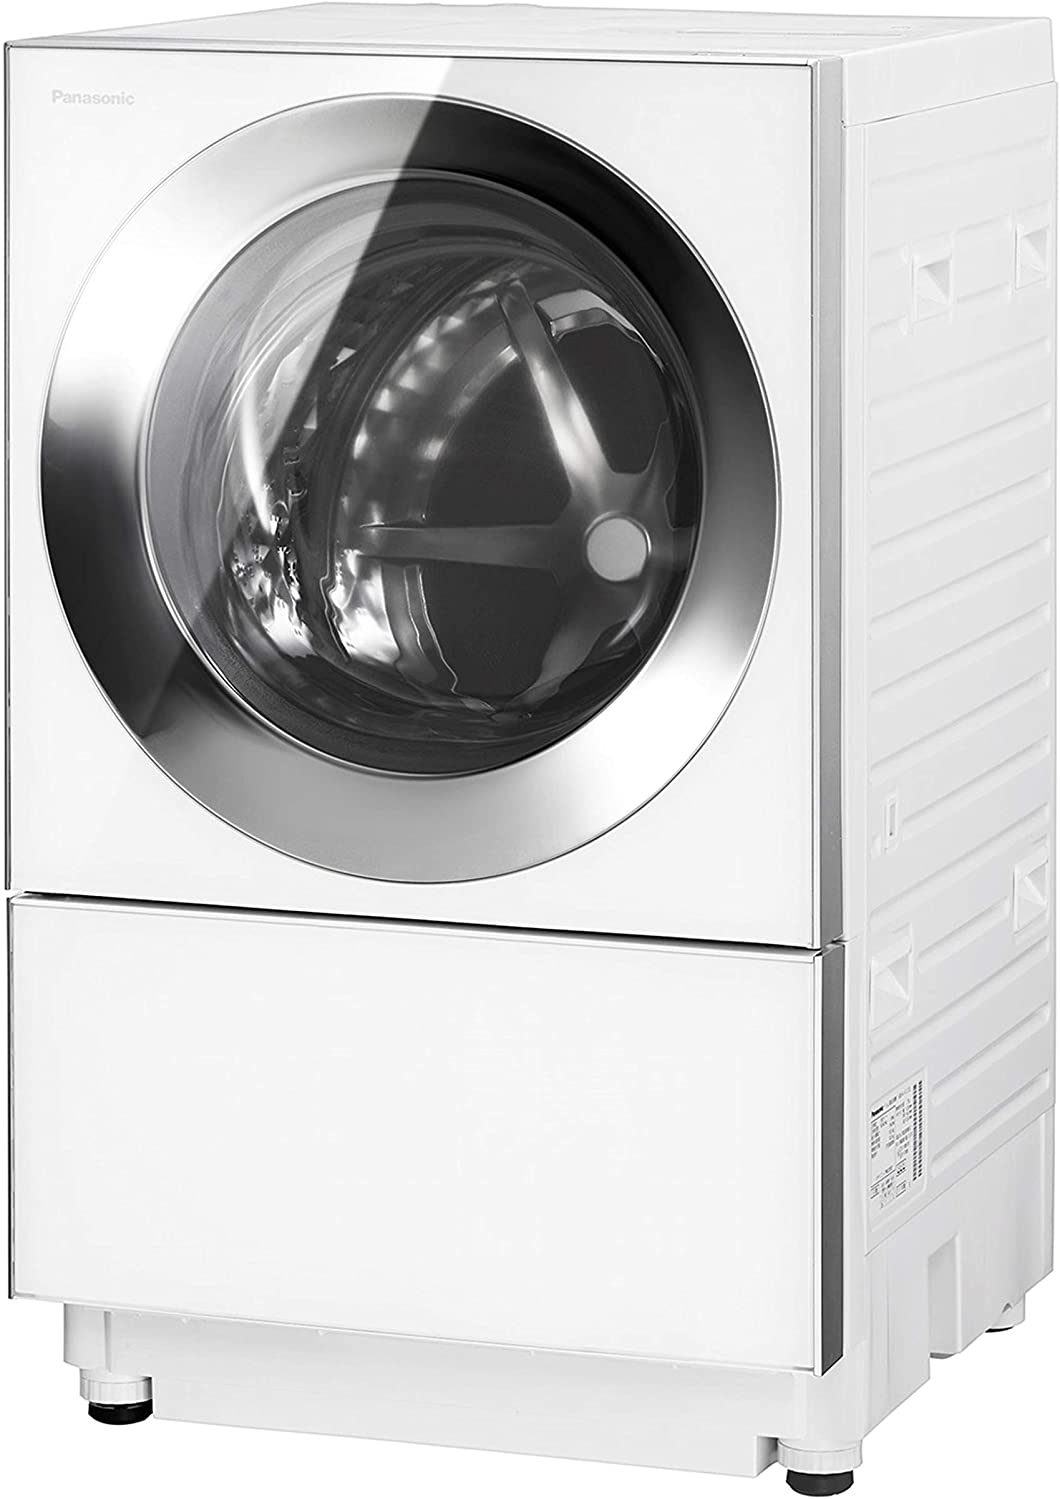 ドラム式洗濯機おすすめ商品：Panasonic(パナソニック) キューブル ななめドラム洗濯乾燥機 NA-VG1400